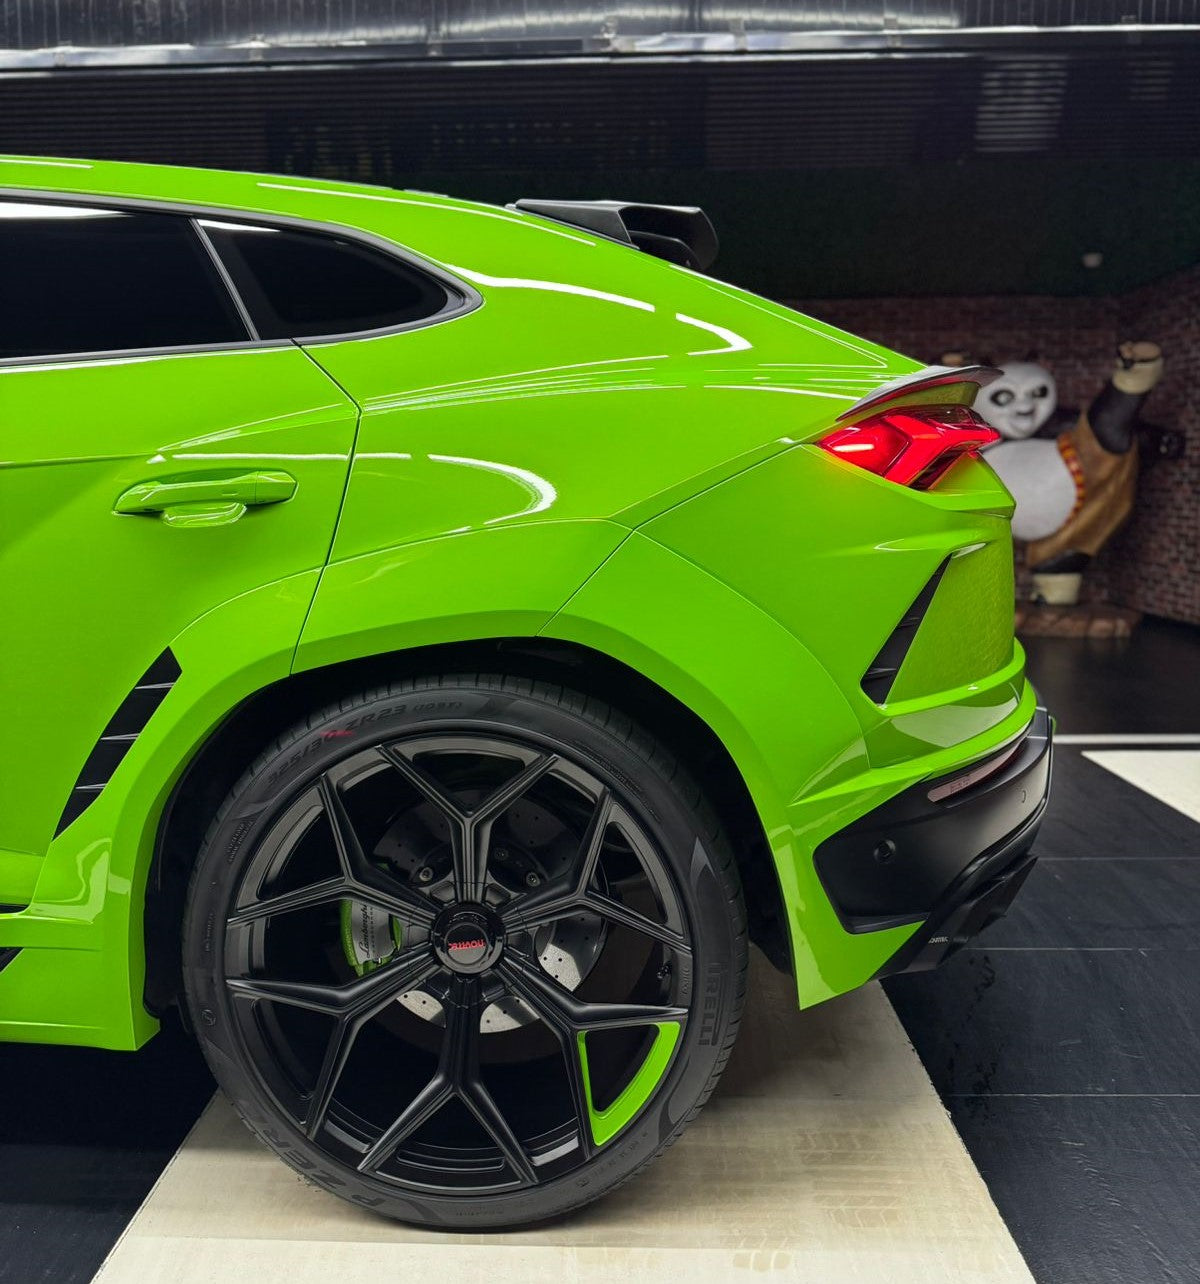 Lamborghini Urus Capsule / Novitec Edition / Full Carbon / 782 HP / Brand New / 2021